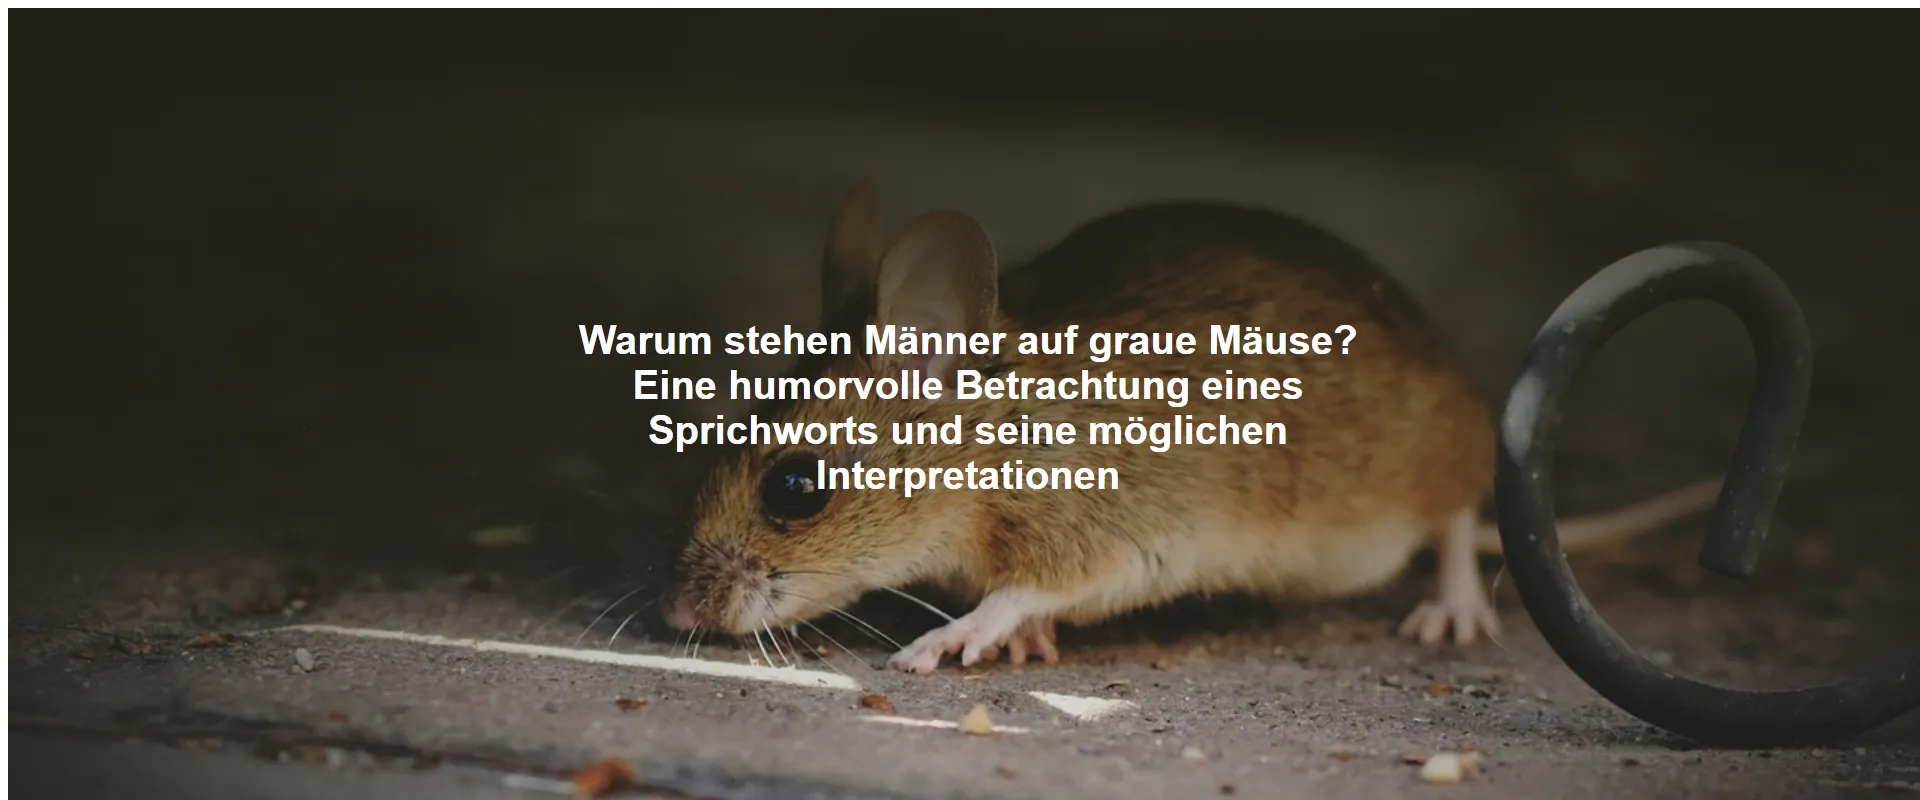 Warum stehen Männer auf graue Mäuse? Eine humorvolle Betrachtung eines Sprichworts und seine möglichen Interpretationen